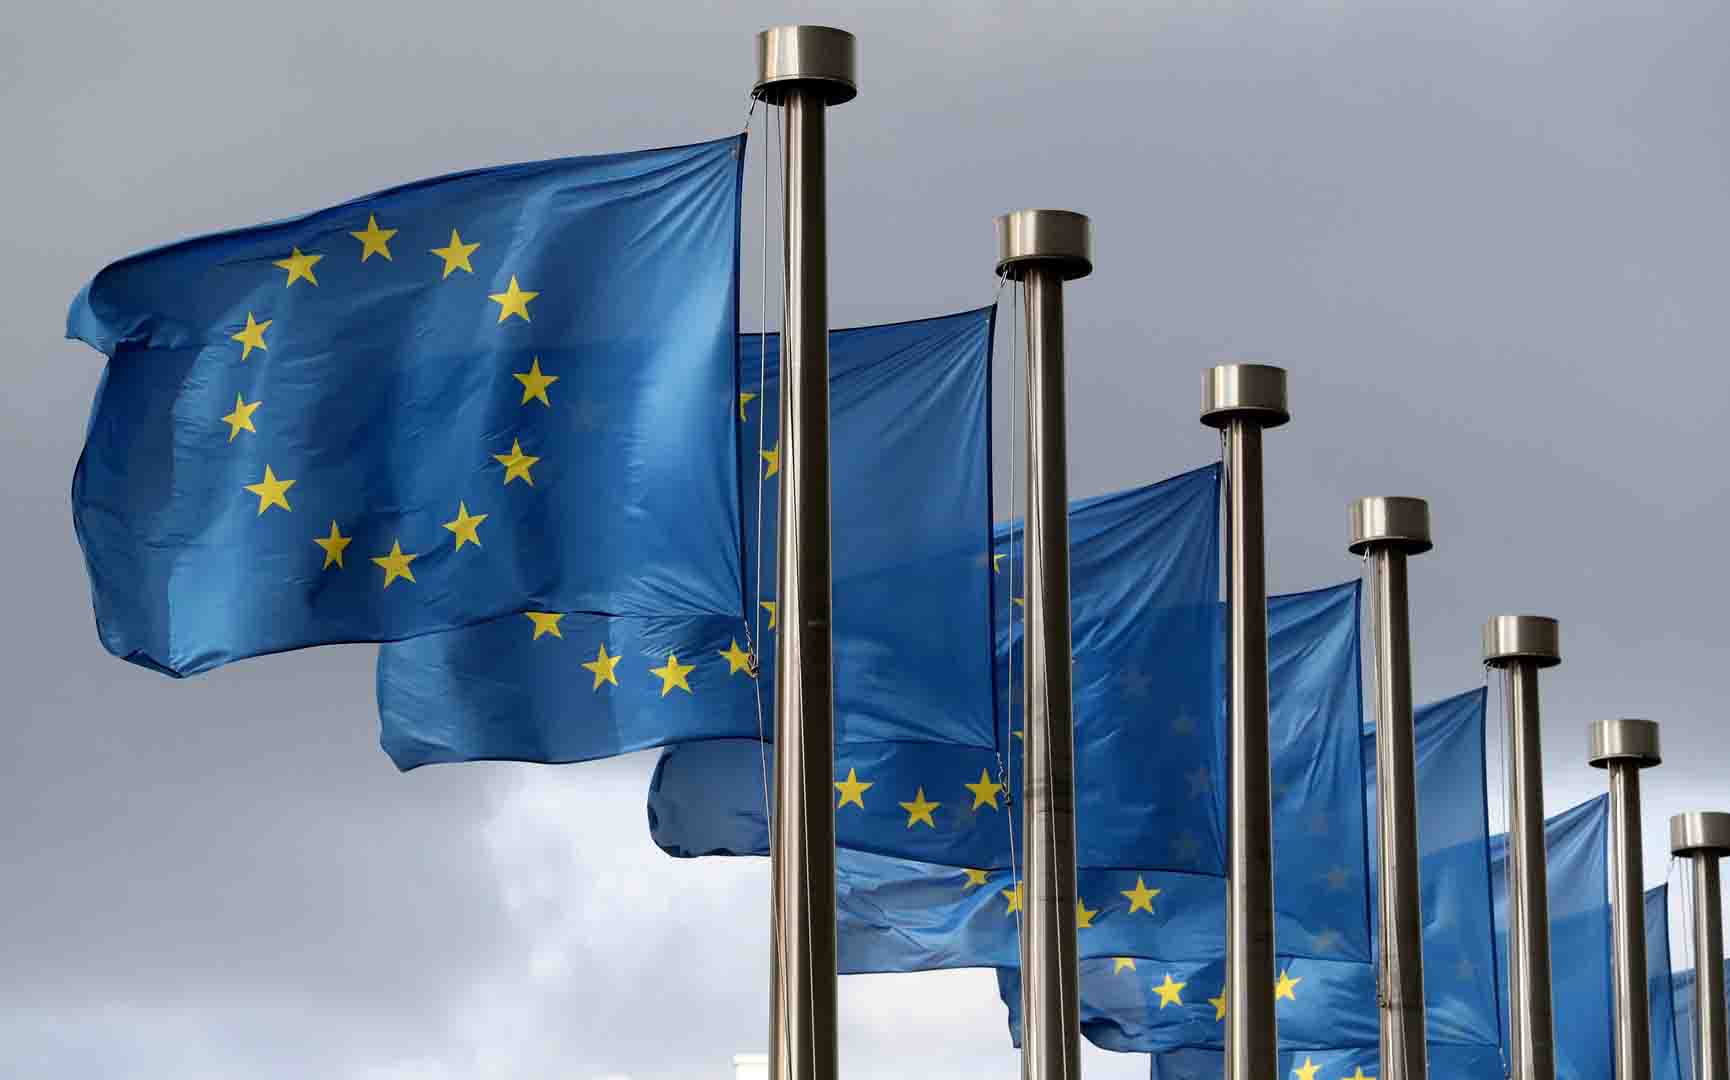 المفوضية الأوروبية ترحب باتفاق بشأن تعزيز إدارة الانبعاثات الصناعية داخل الدول الأعضاء